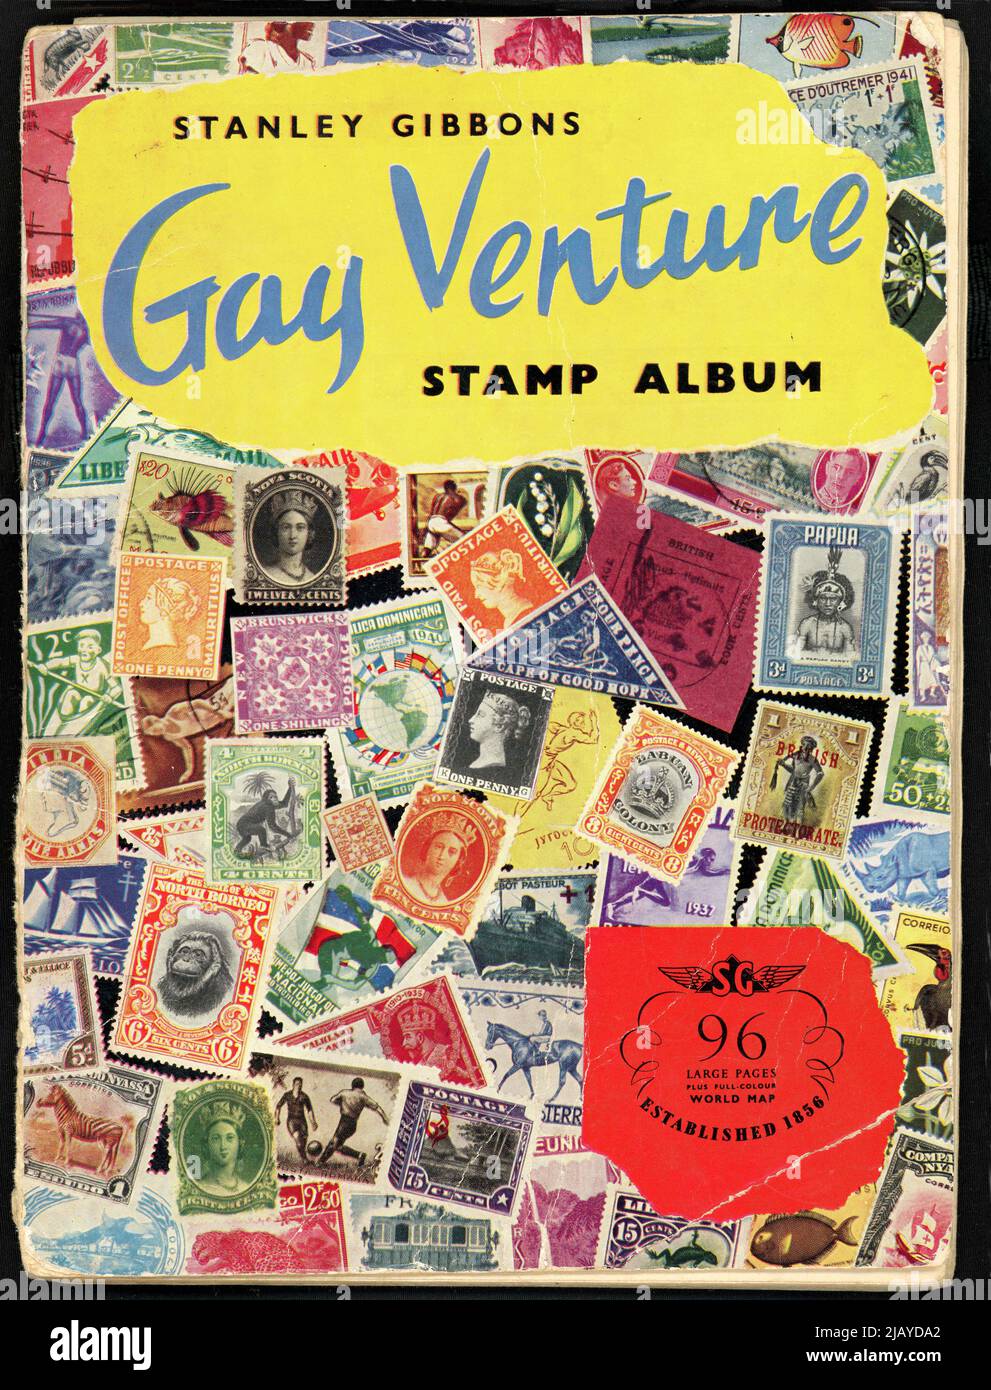 Album de timbres gay Venture, deuxième édition, vers 1960 Banque D'Images